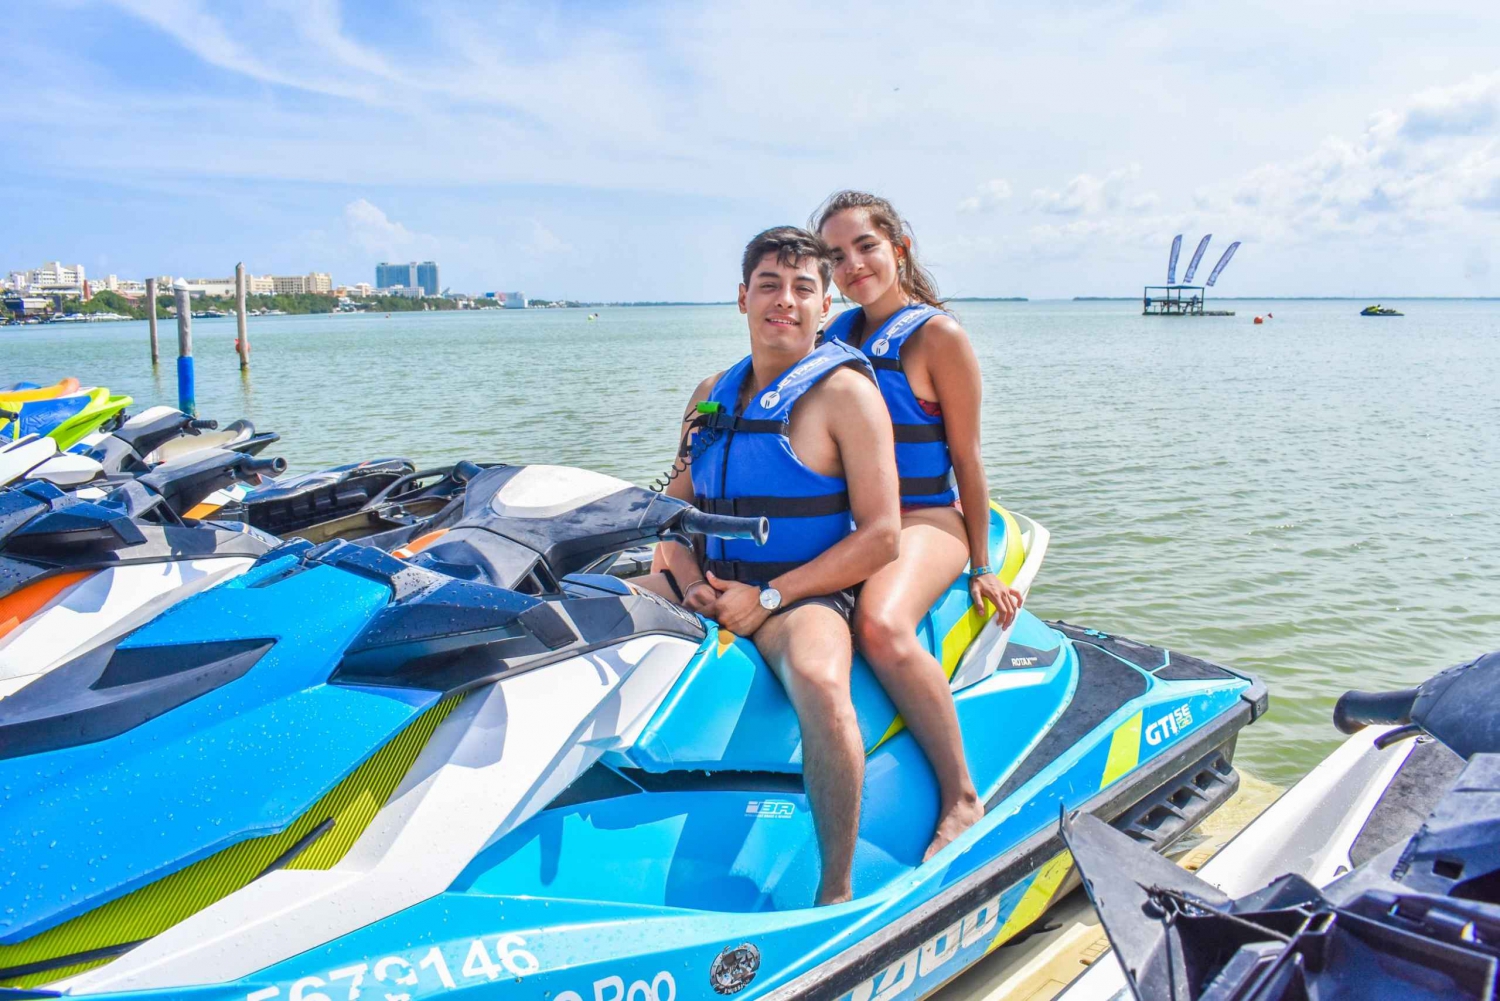 Cancun: WaveRunner Ride